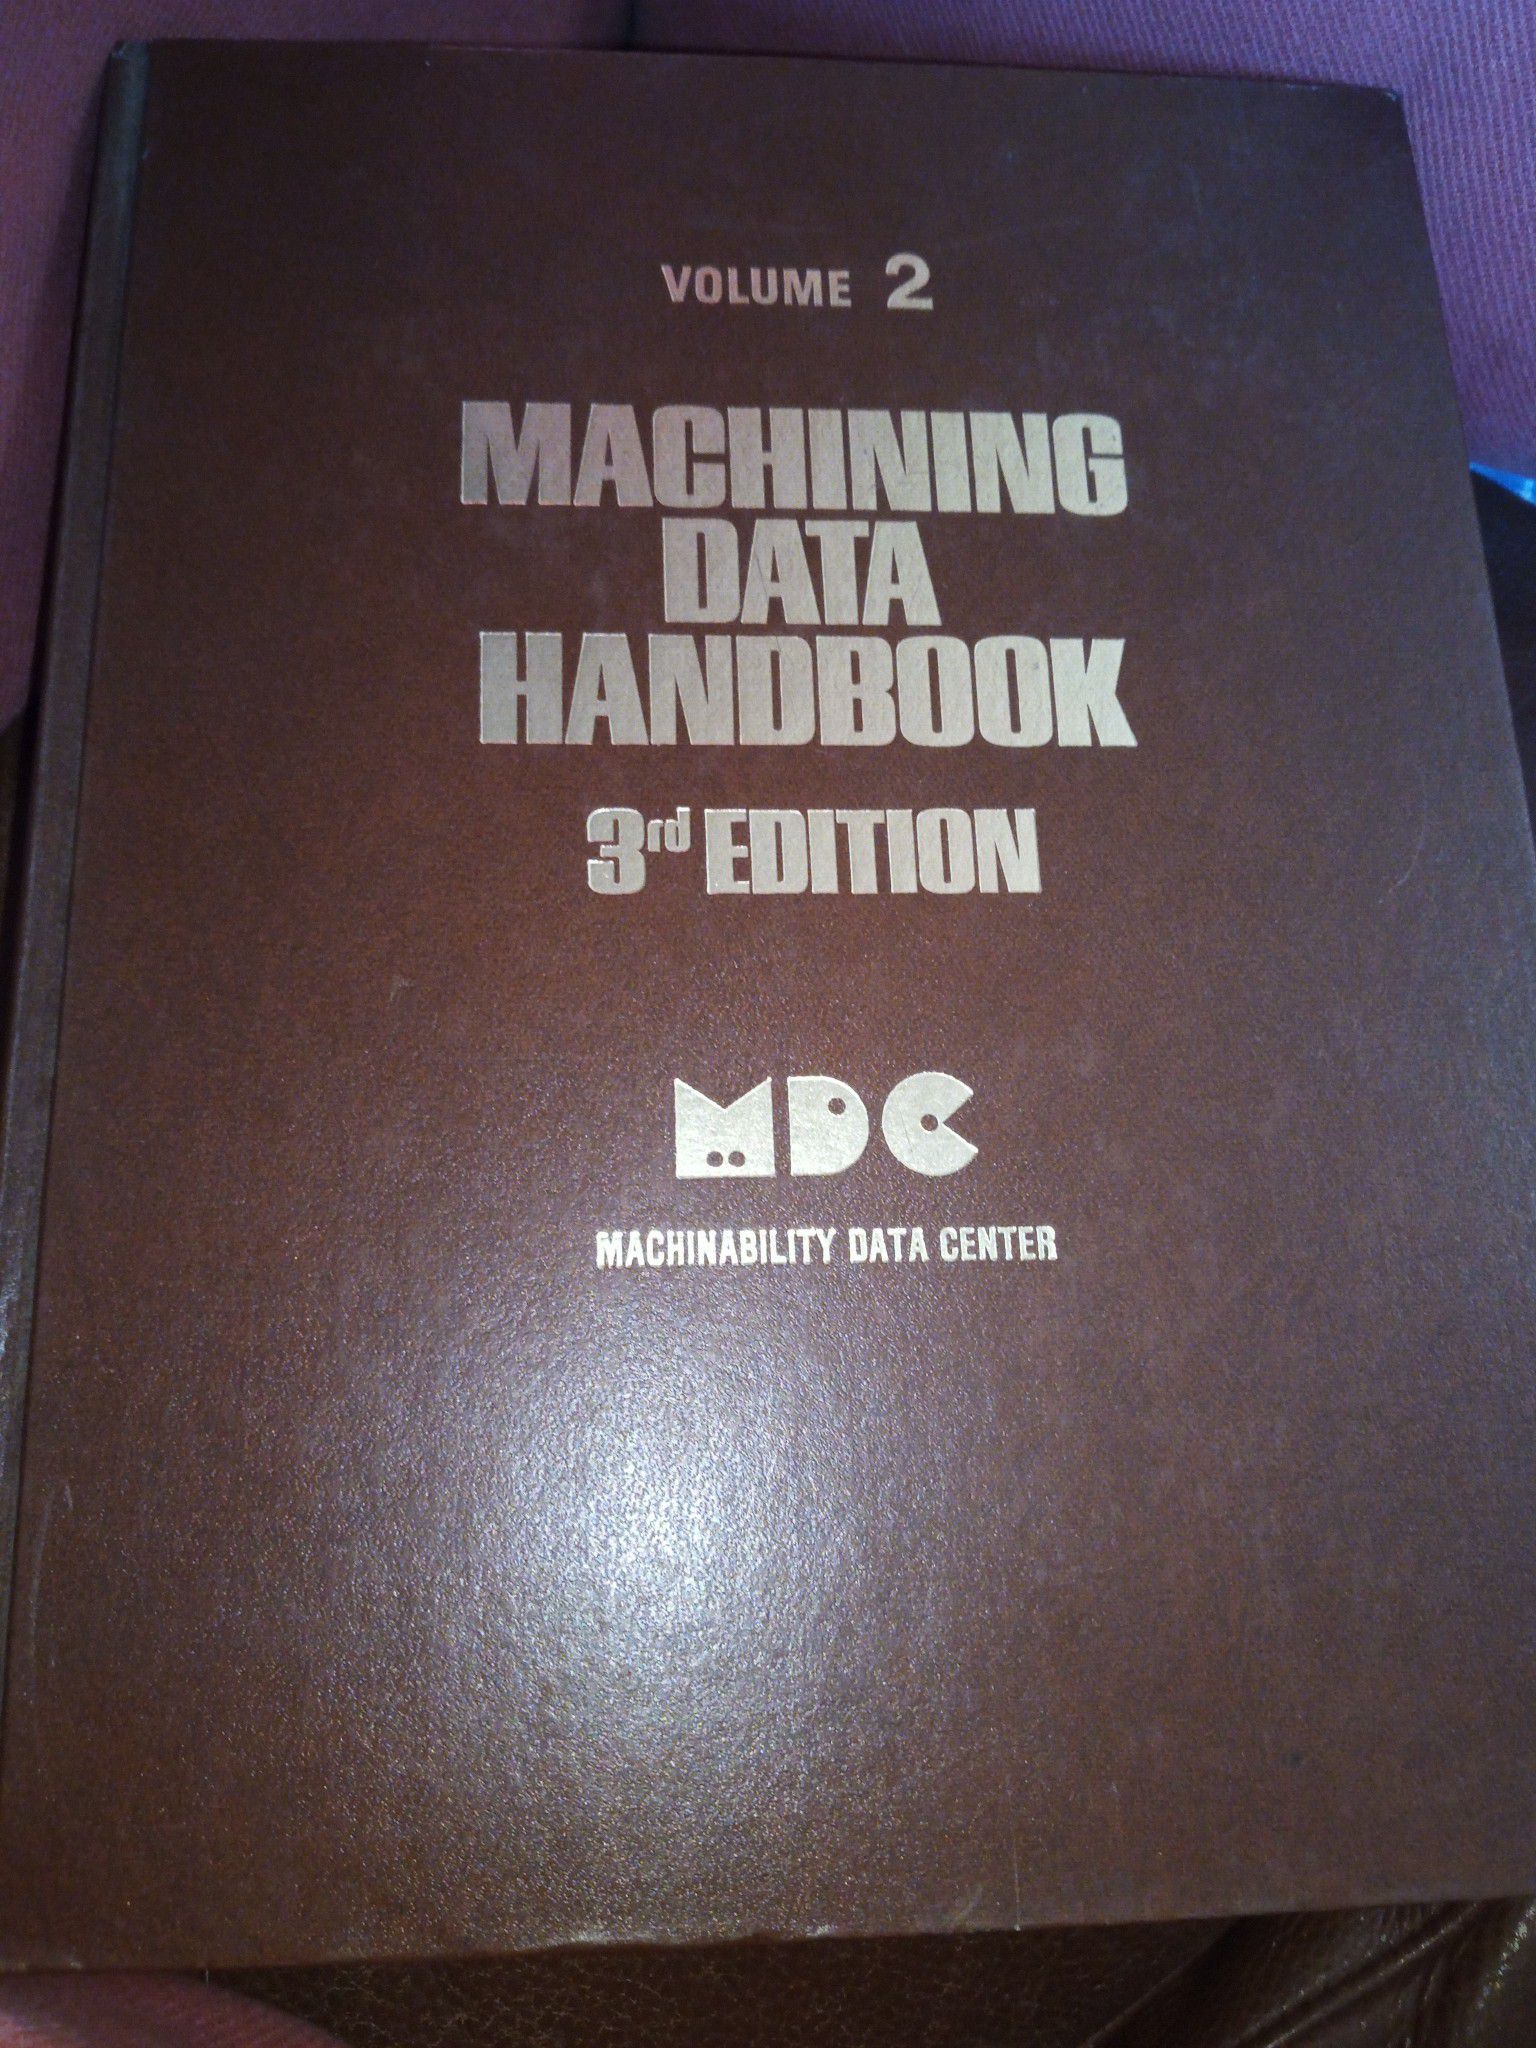 Machining data handbook (volume 2)